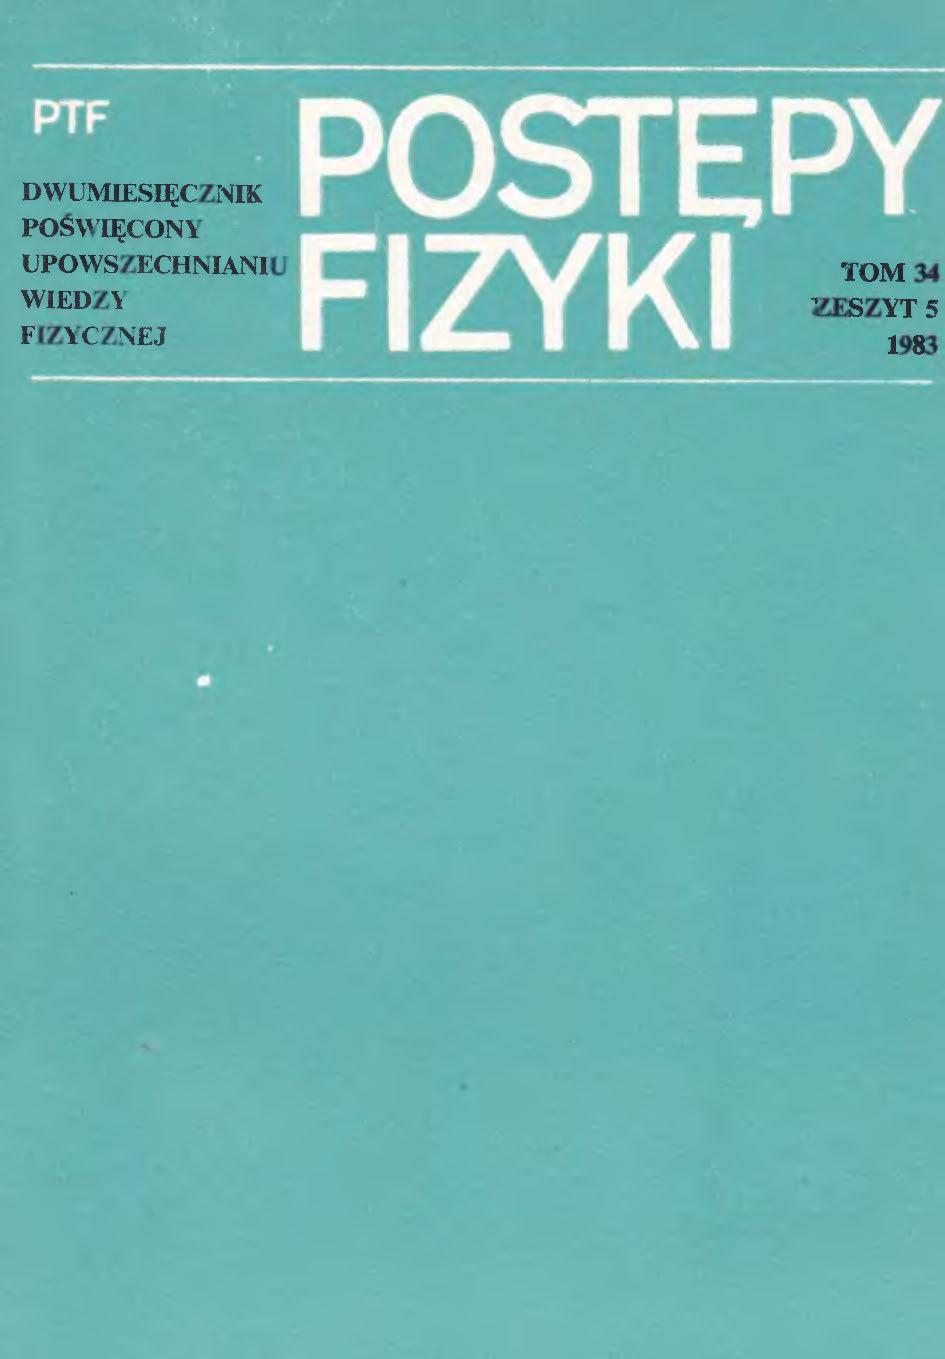 Postępy Fizyki 34 (5) 1983